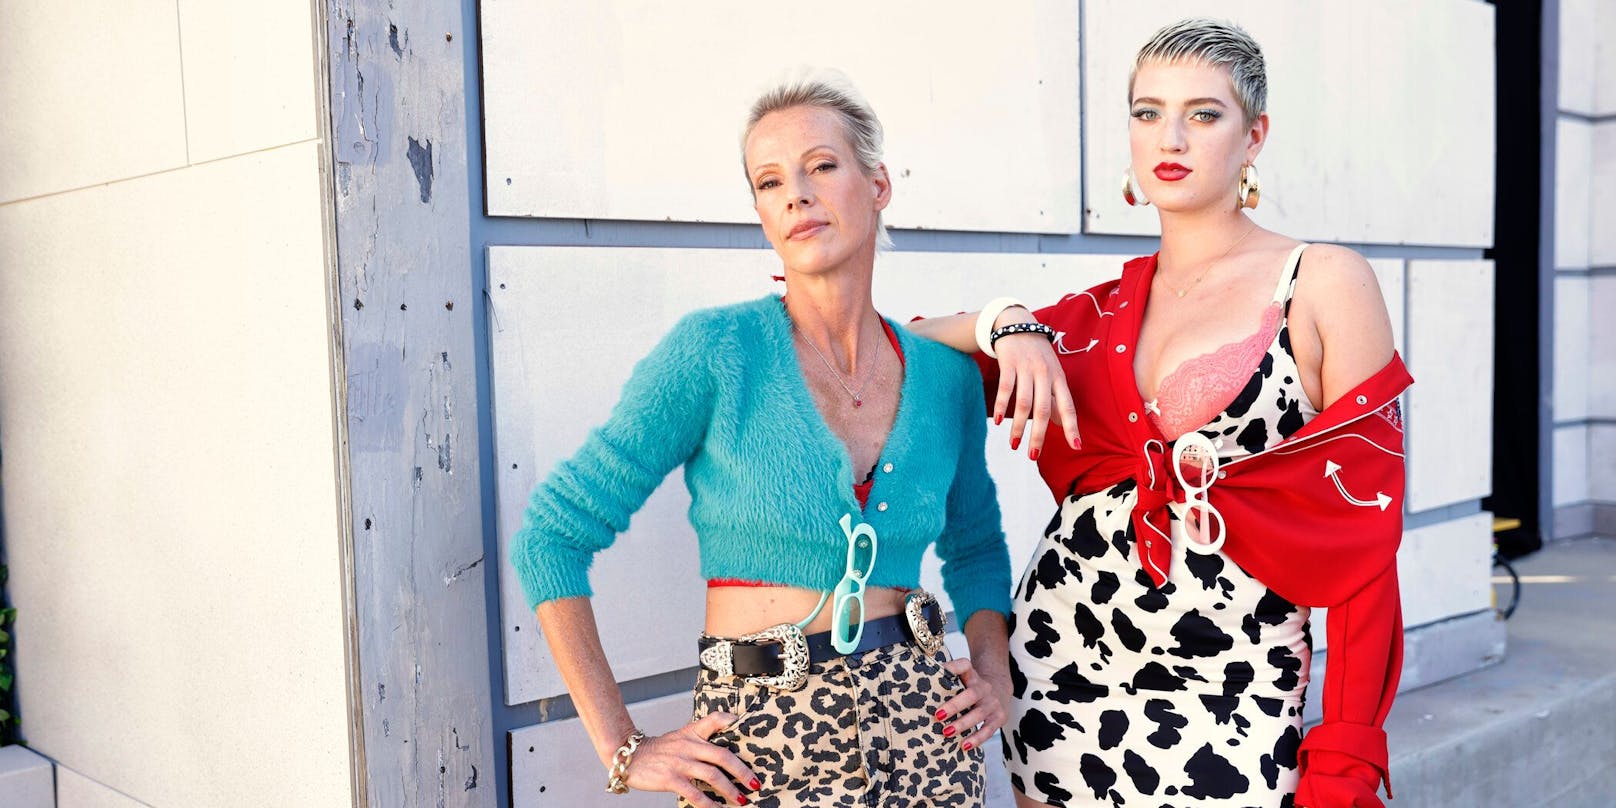 Martina mit ihrer Tochter Lou-Anne sind beide Teil von "Germany's Next Topmodel".